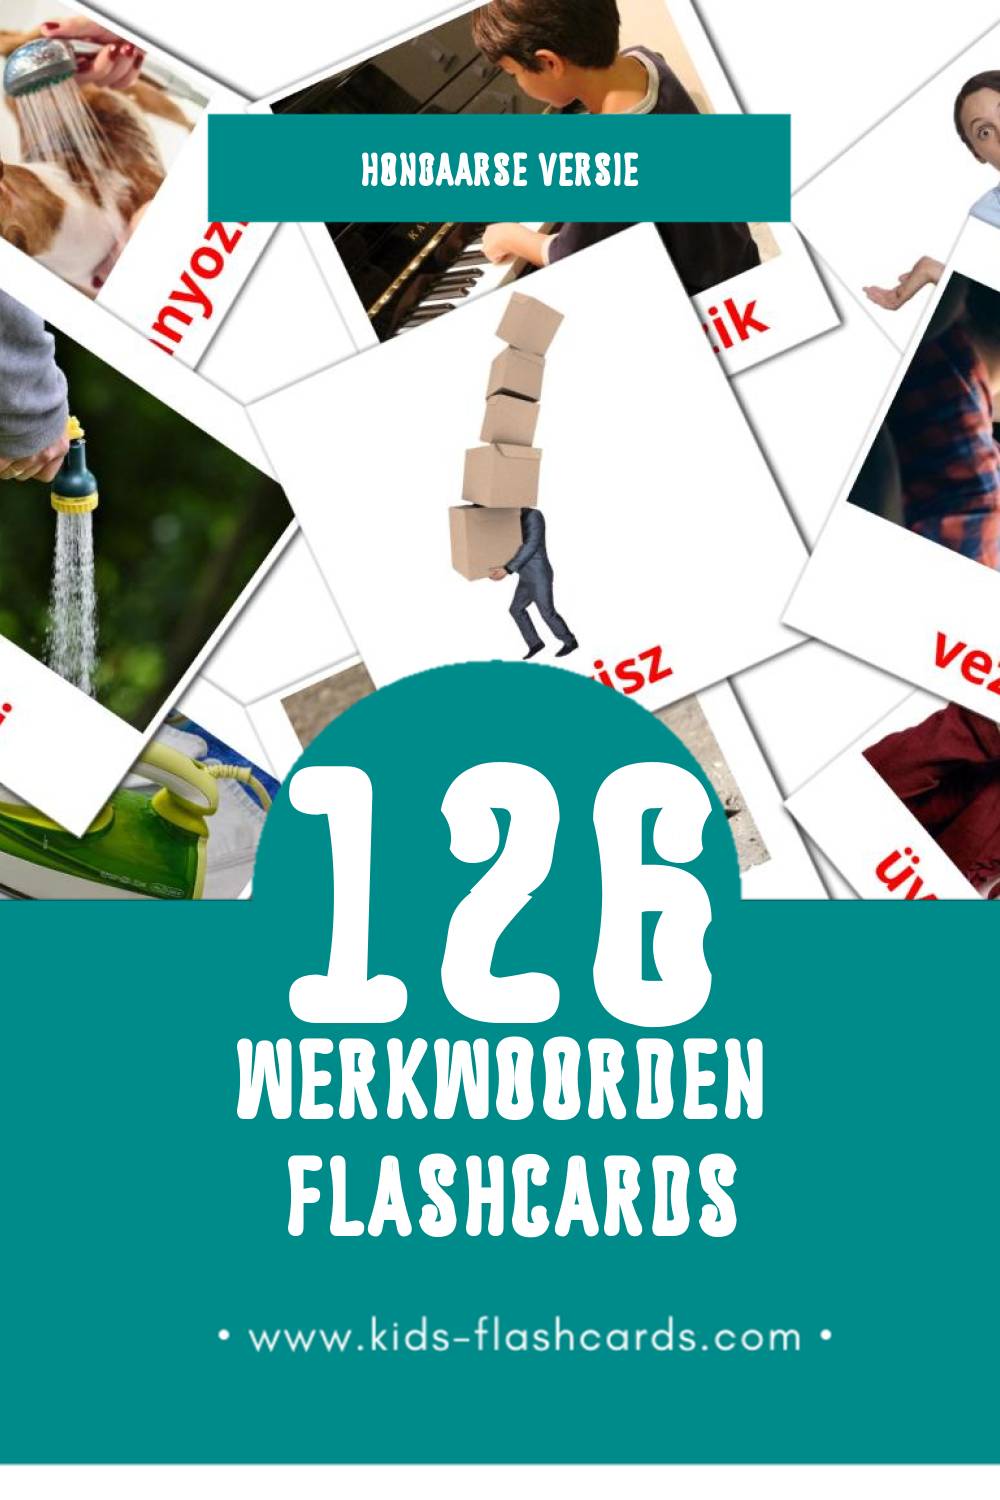 Visuele Igék Flashcards voor Kleuters (126 kaarten in het Hongaars)